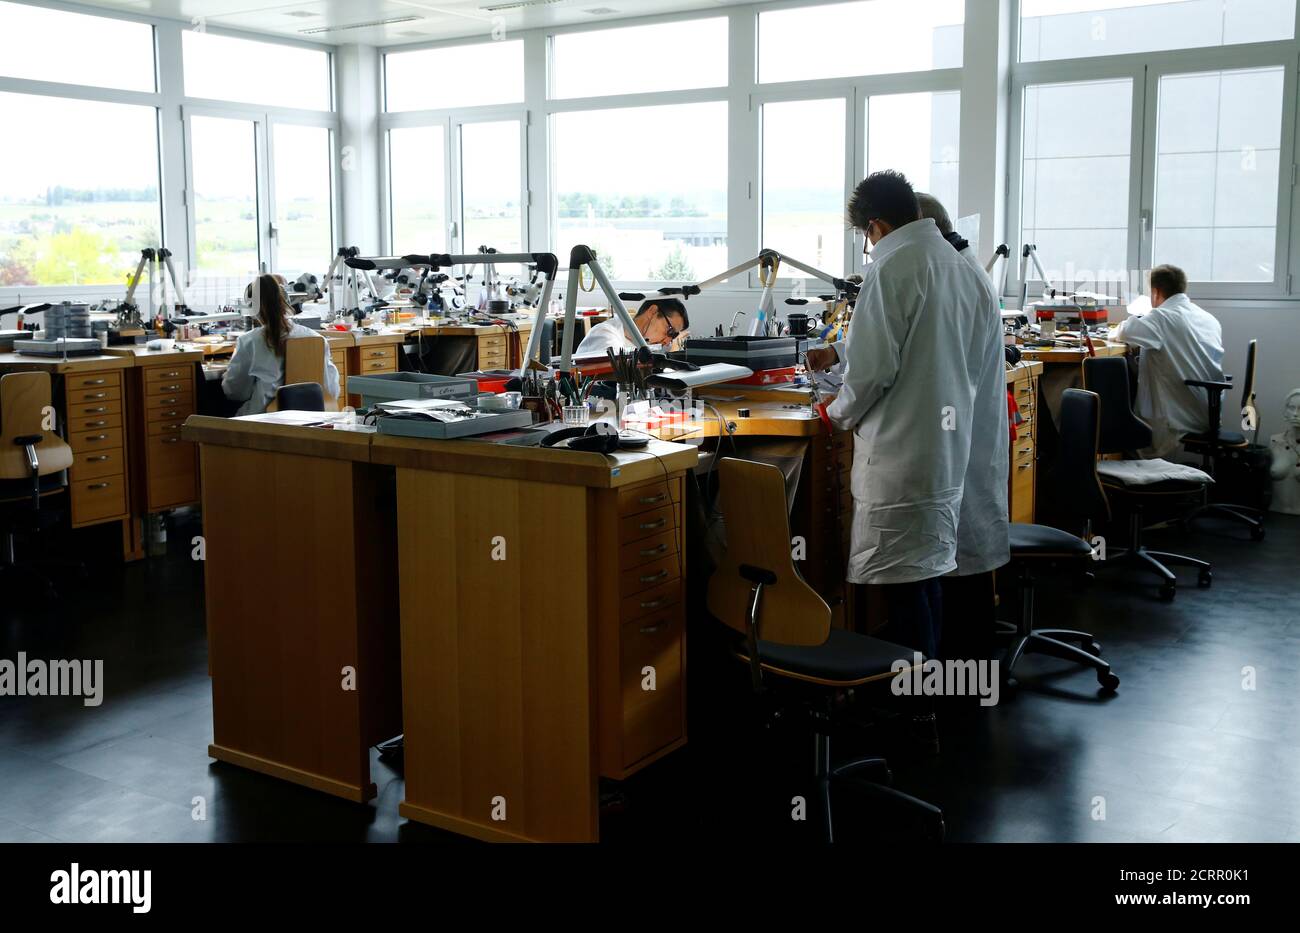 Mitarbeiter arbeiten im Departement Haute Joaillerie unabhängige  Schmuck-und Uhrenhersteller Chopard in Meyrin, Schweiz 1. Mai 2017.  REUTERS/Denis Balibouse Stockfotografie - Alamy